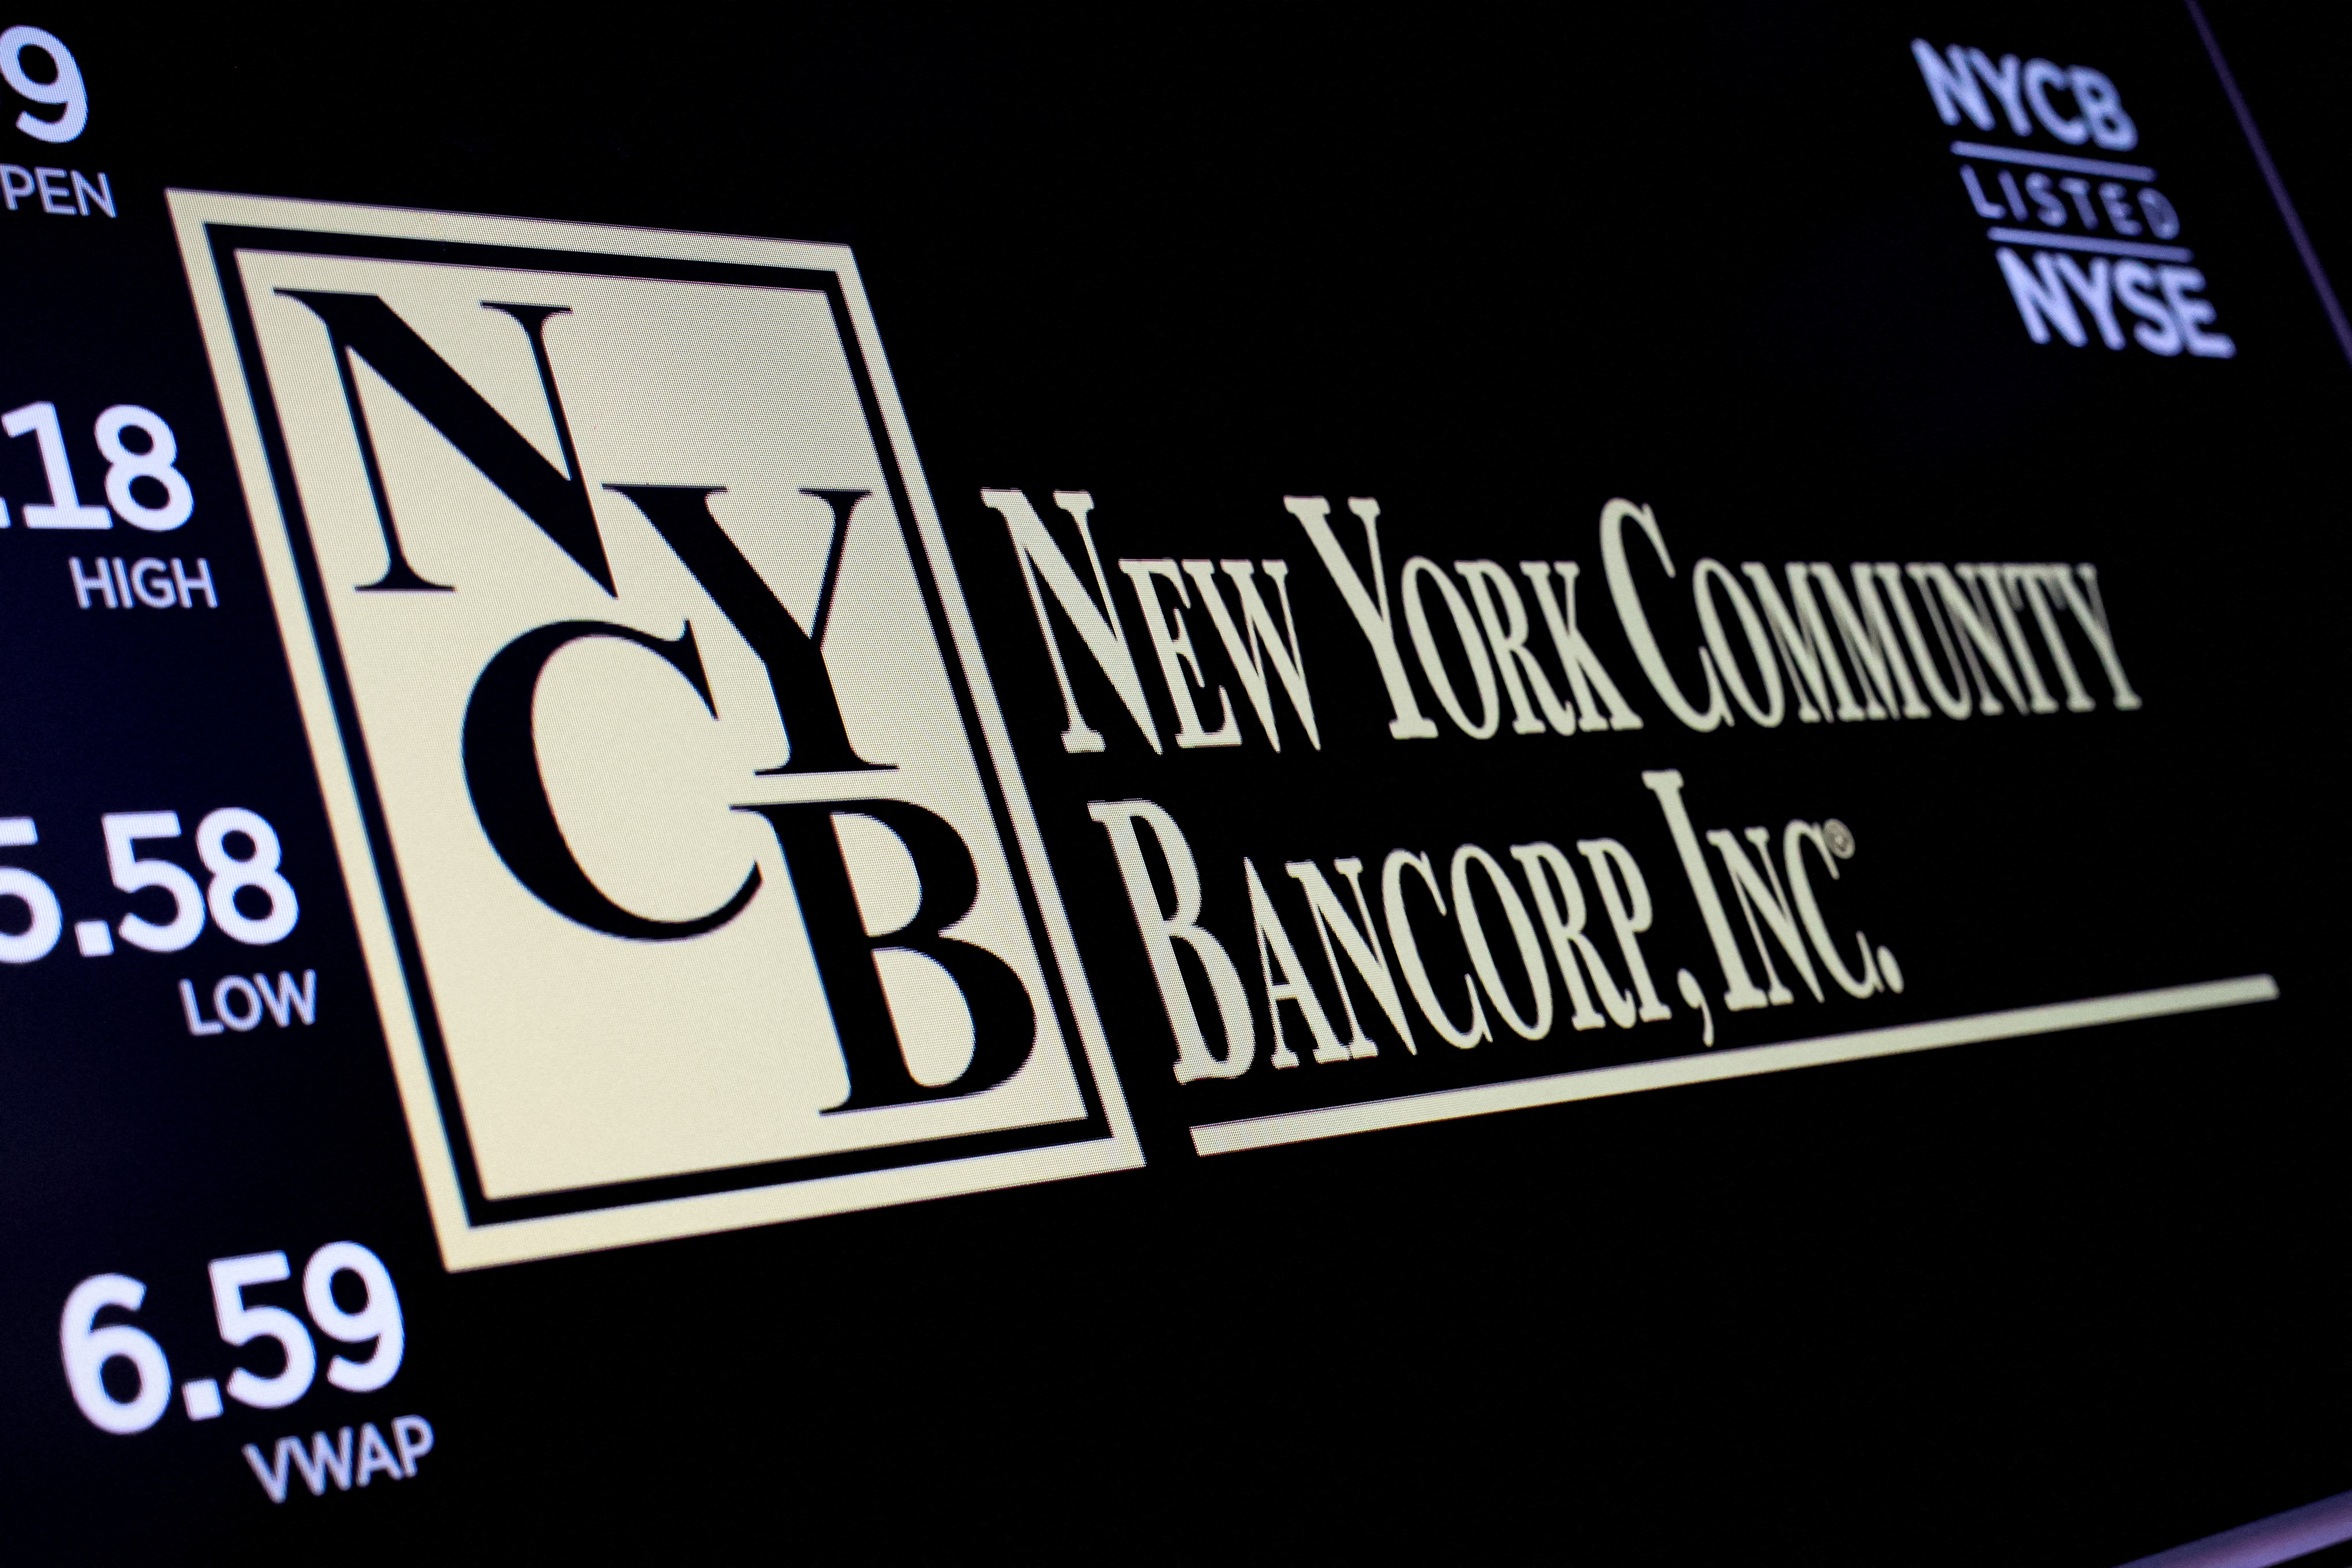 El logo de New York Community Bancorp, en una pantalla del parqué de la Bolsa de Nueva York.